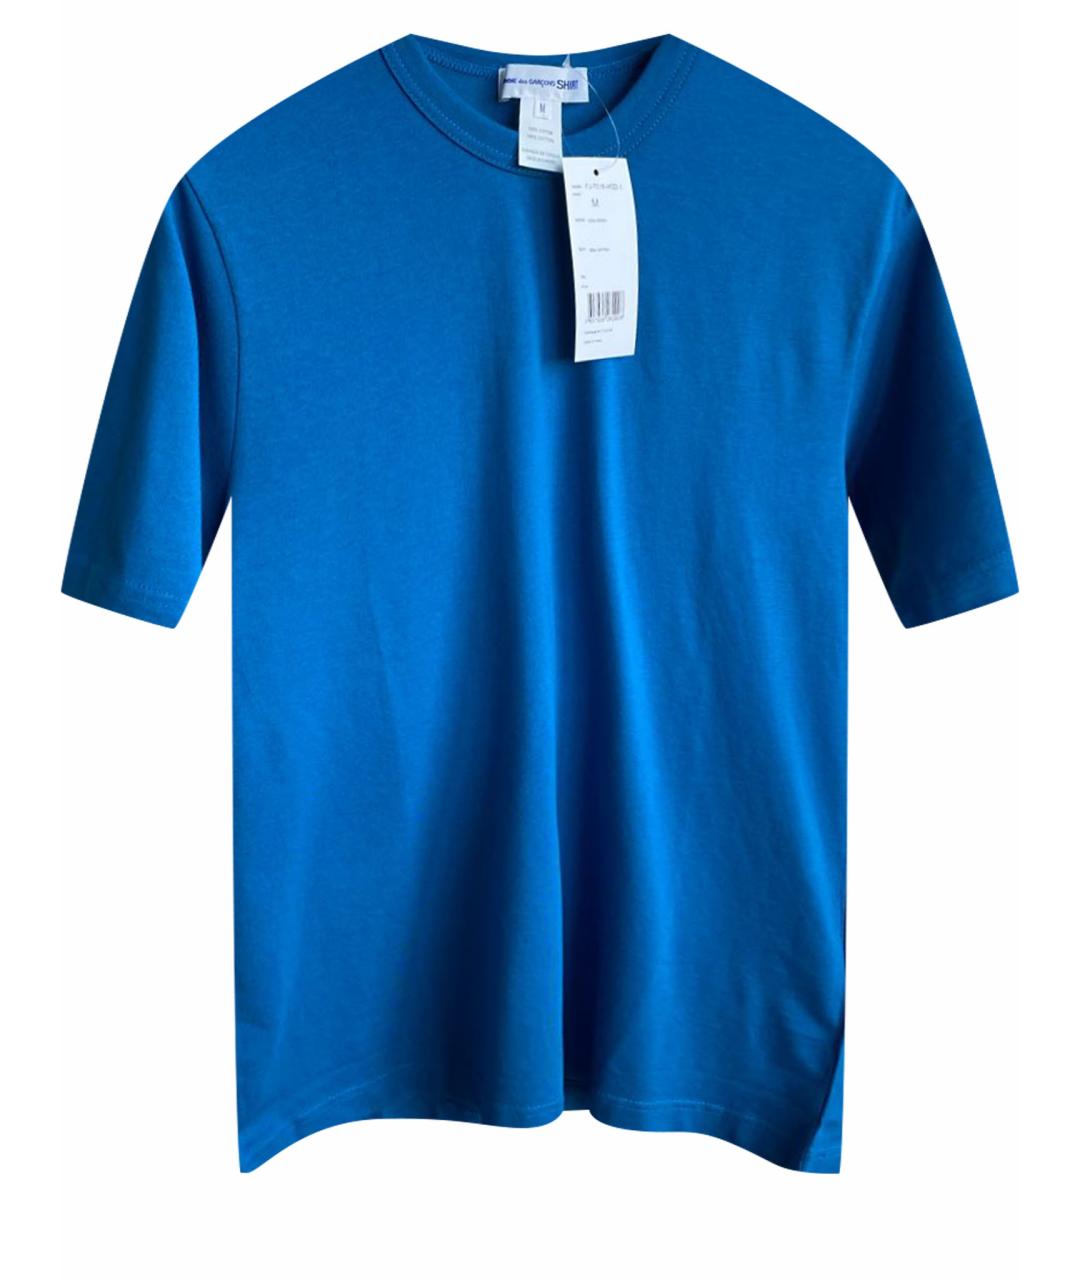 COMME DES GARÇONS SHIRT Синяя хлопковая футболка, фото 1